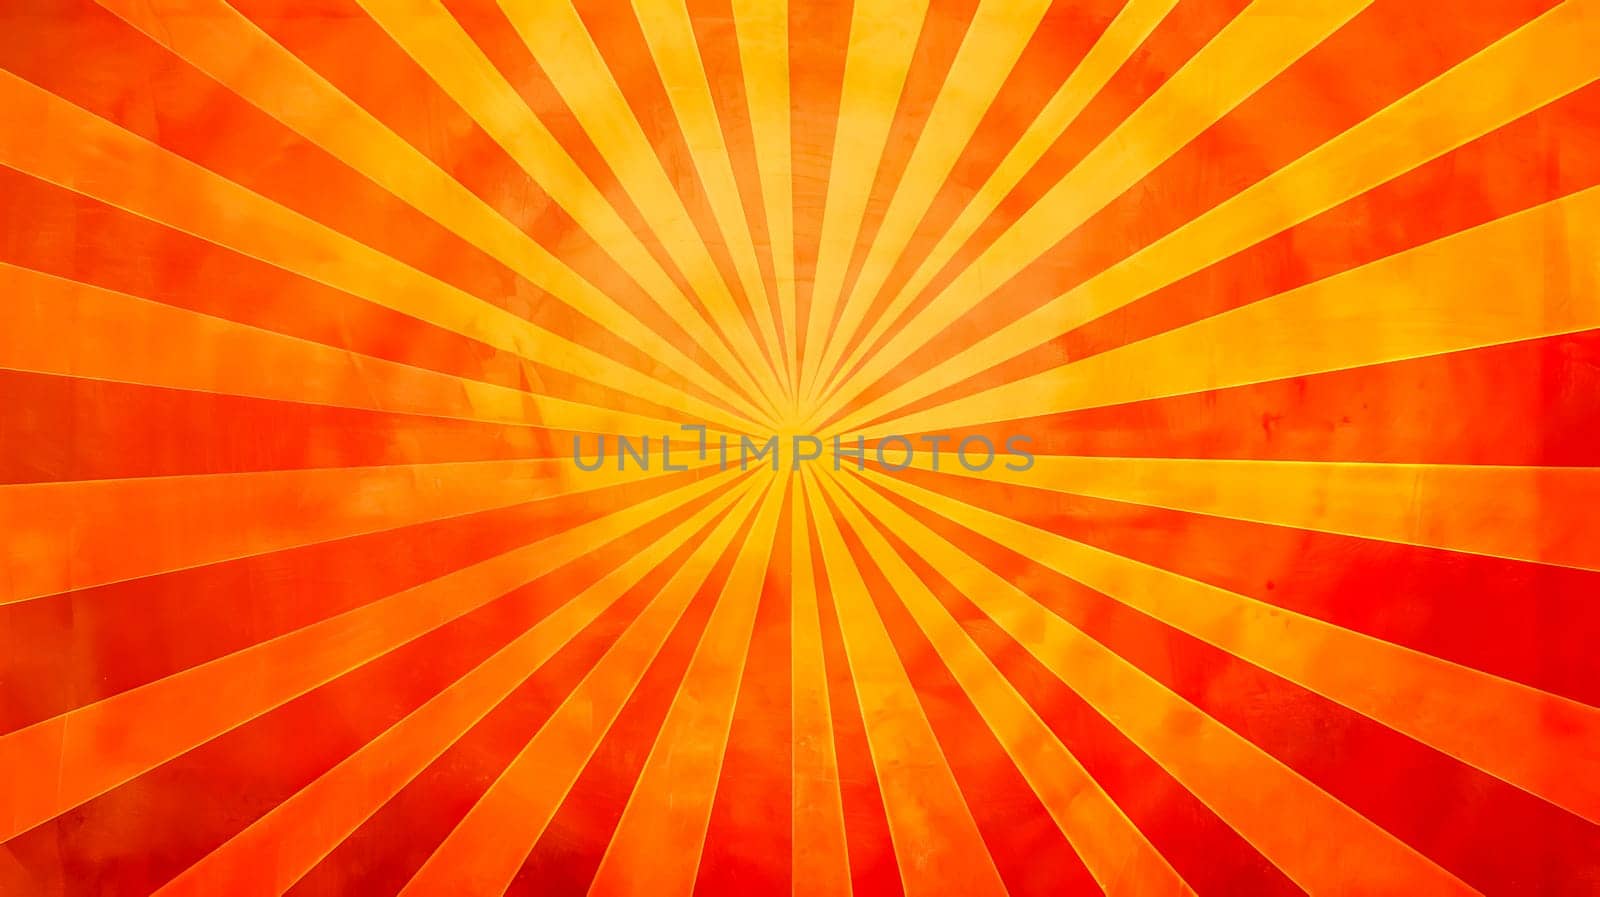 Radiant orange and yellow sunburst background by Edophoto